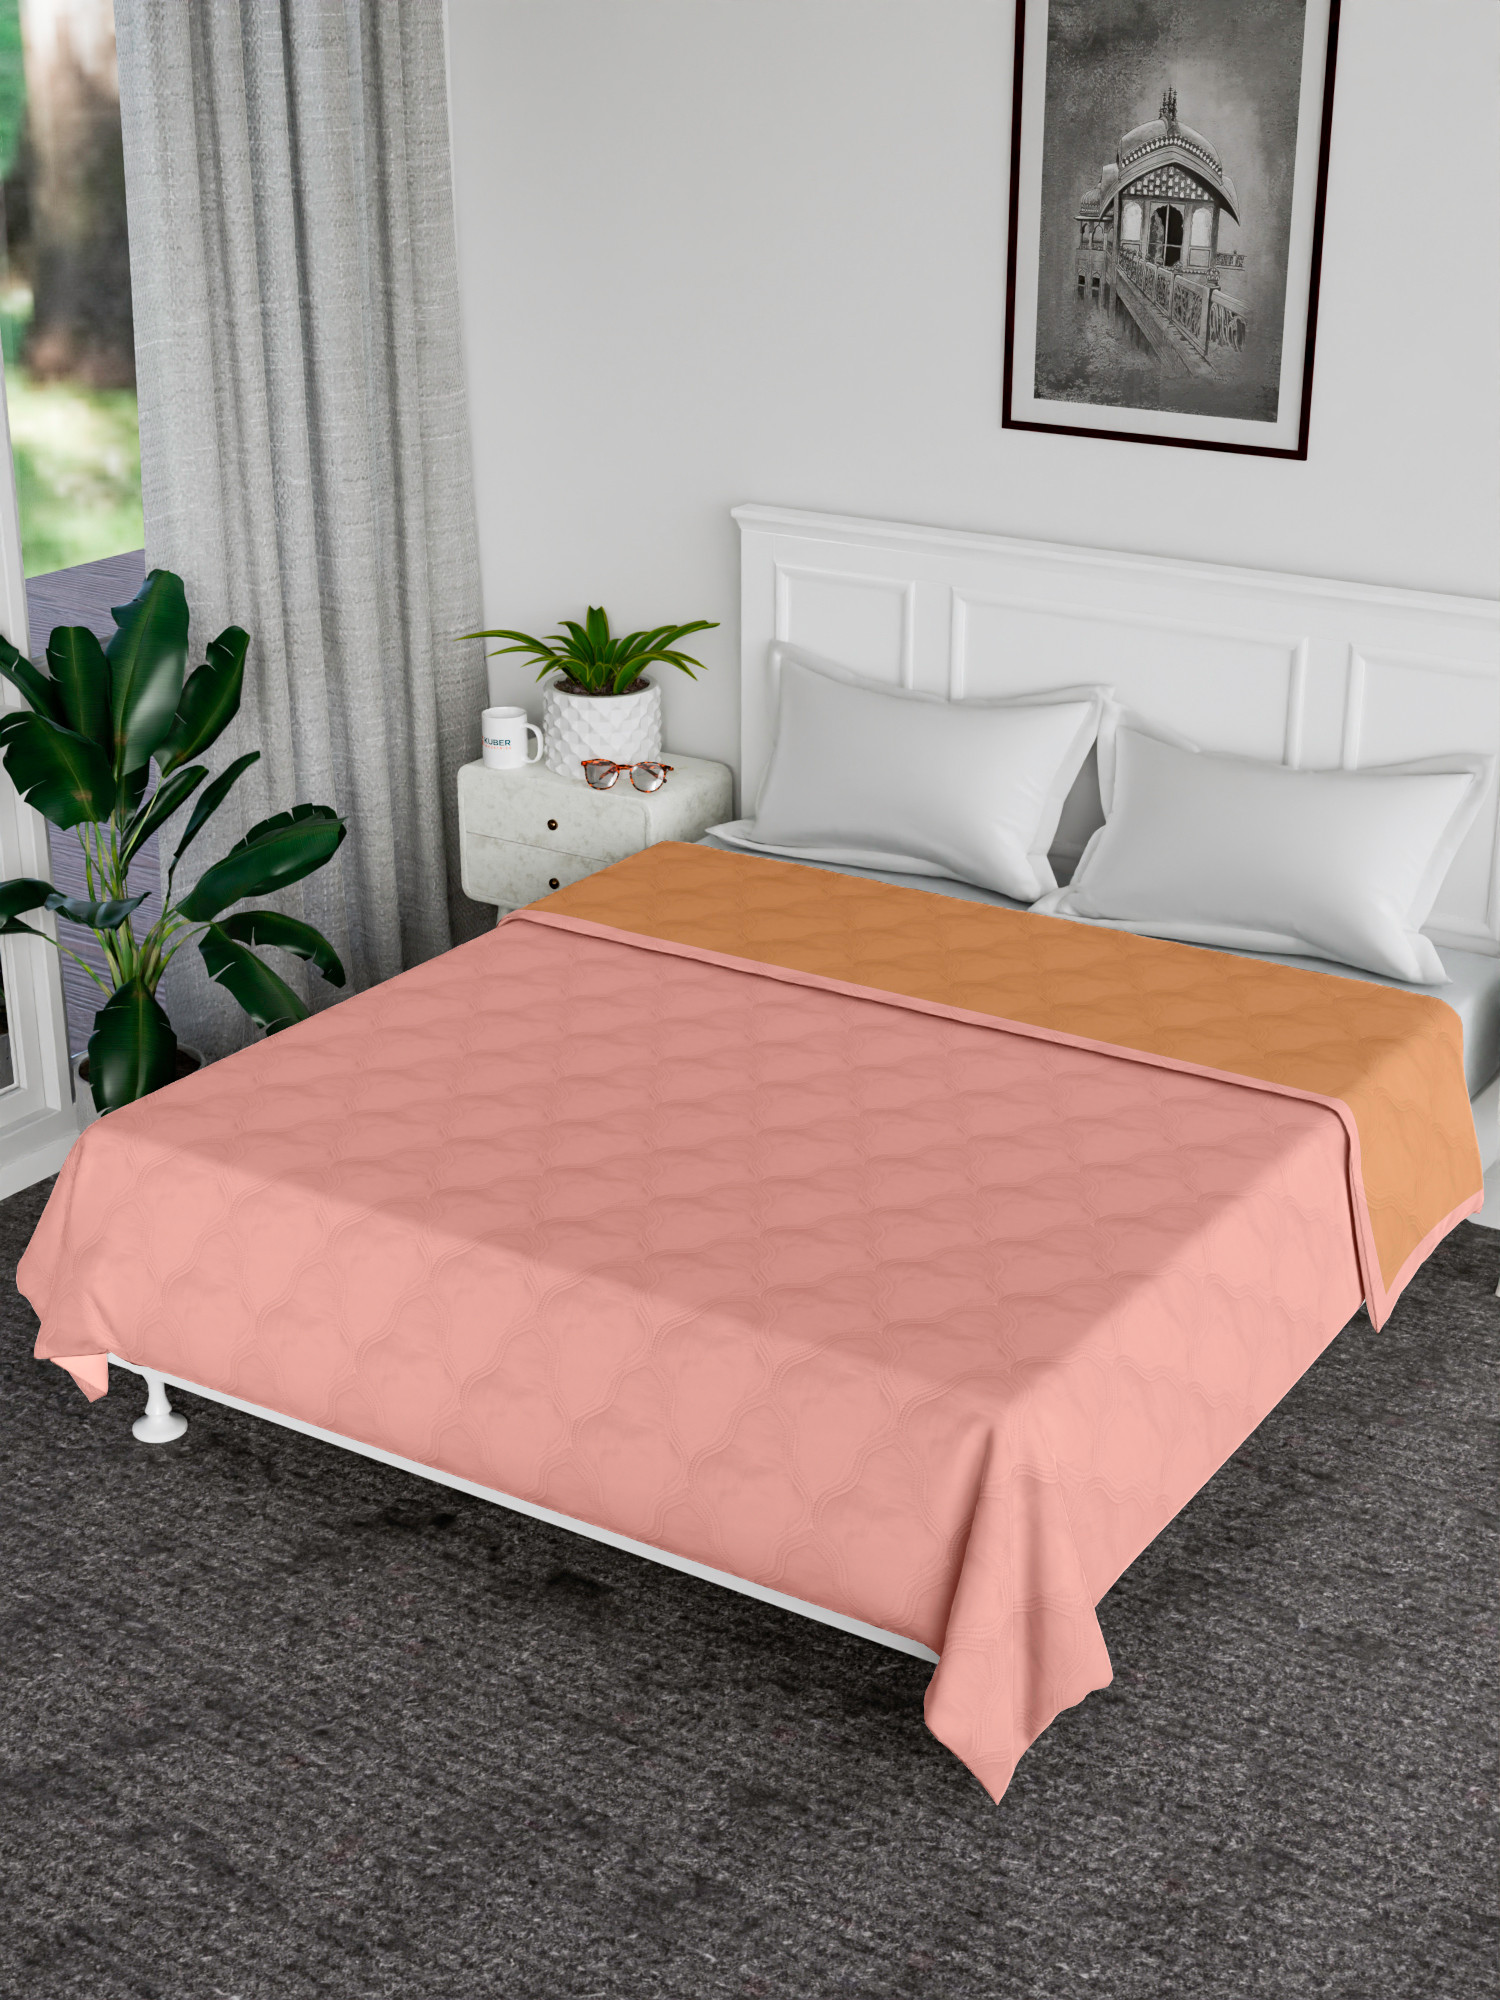 Kuber Industries Comforter | Microfiber Blanket for Summer | Blanket for Winter | Quilted Blanket Cover | Reversible Comforter | Blanket for Double Bed | Peach